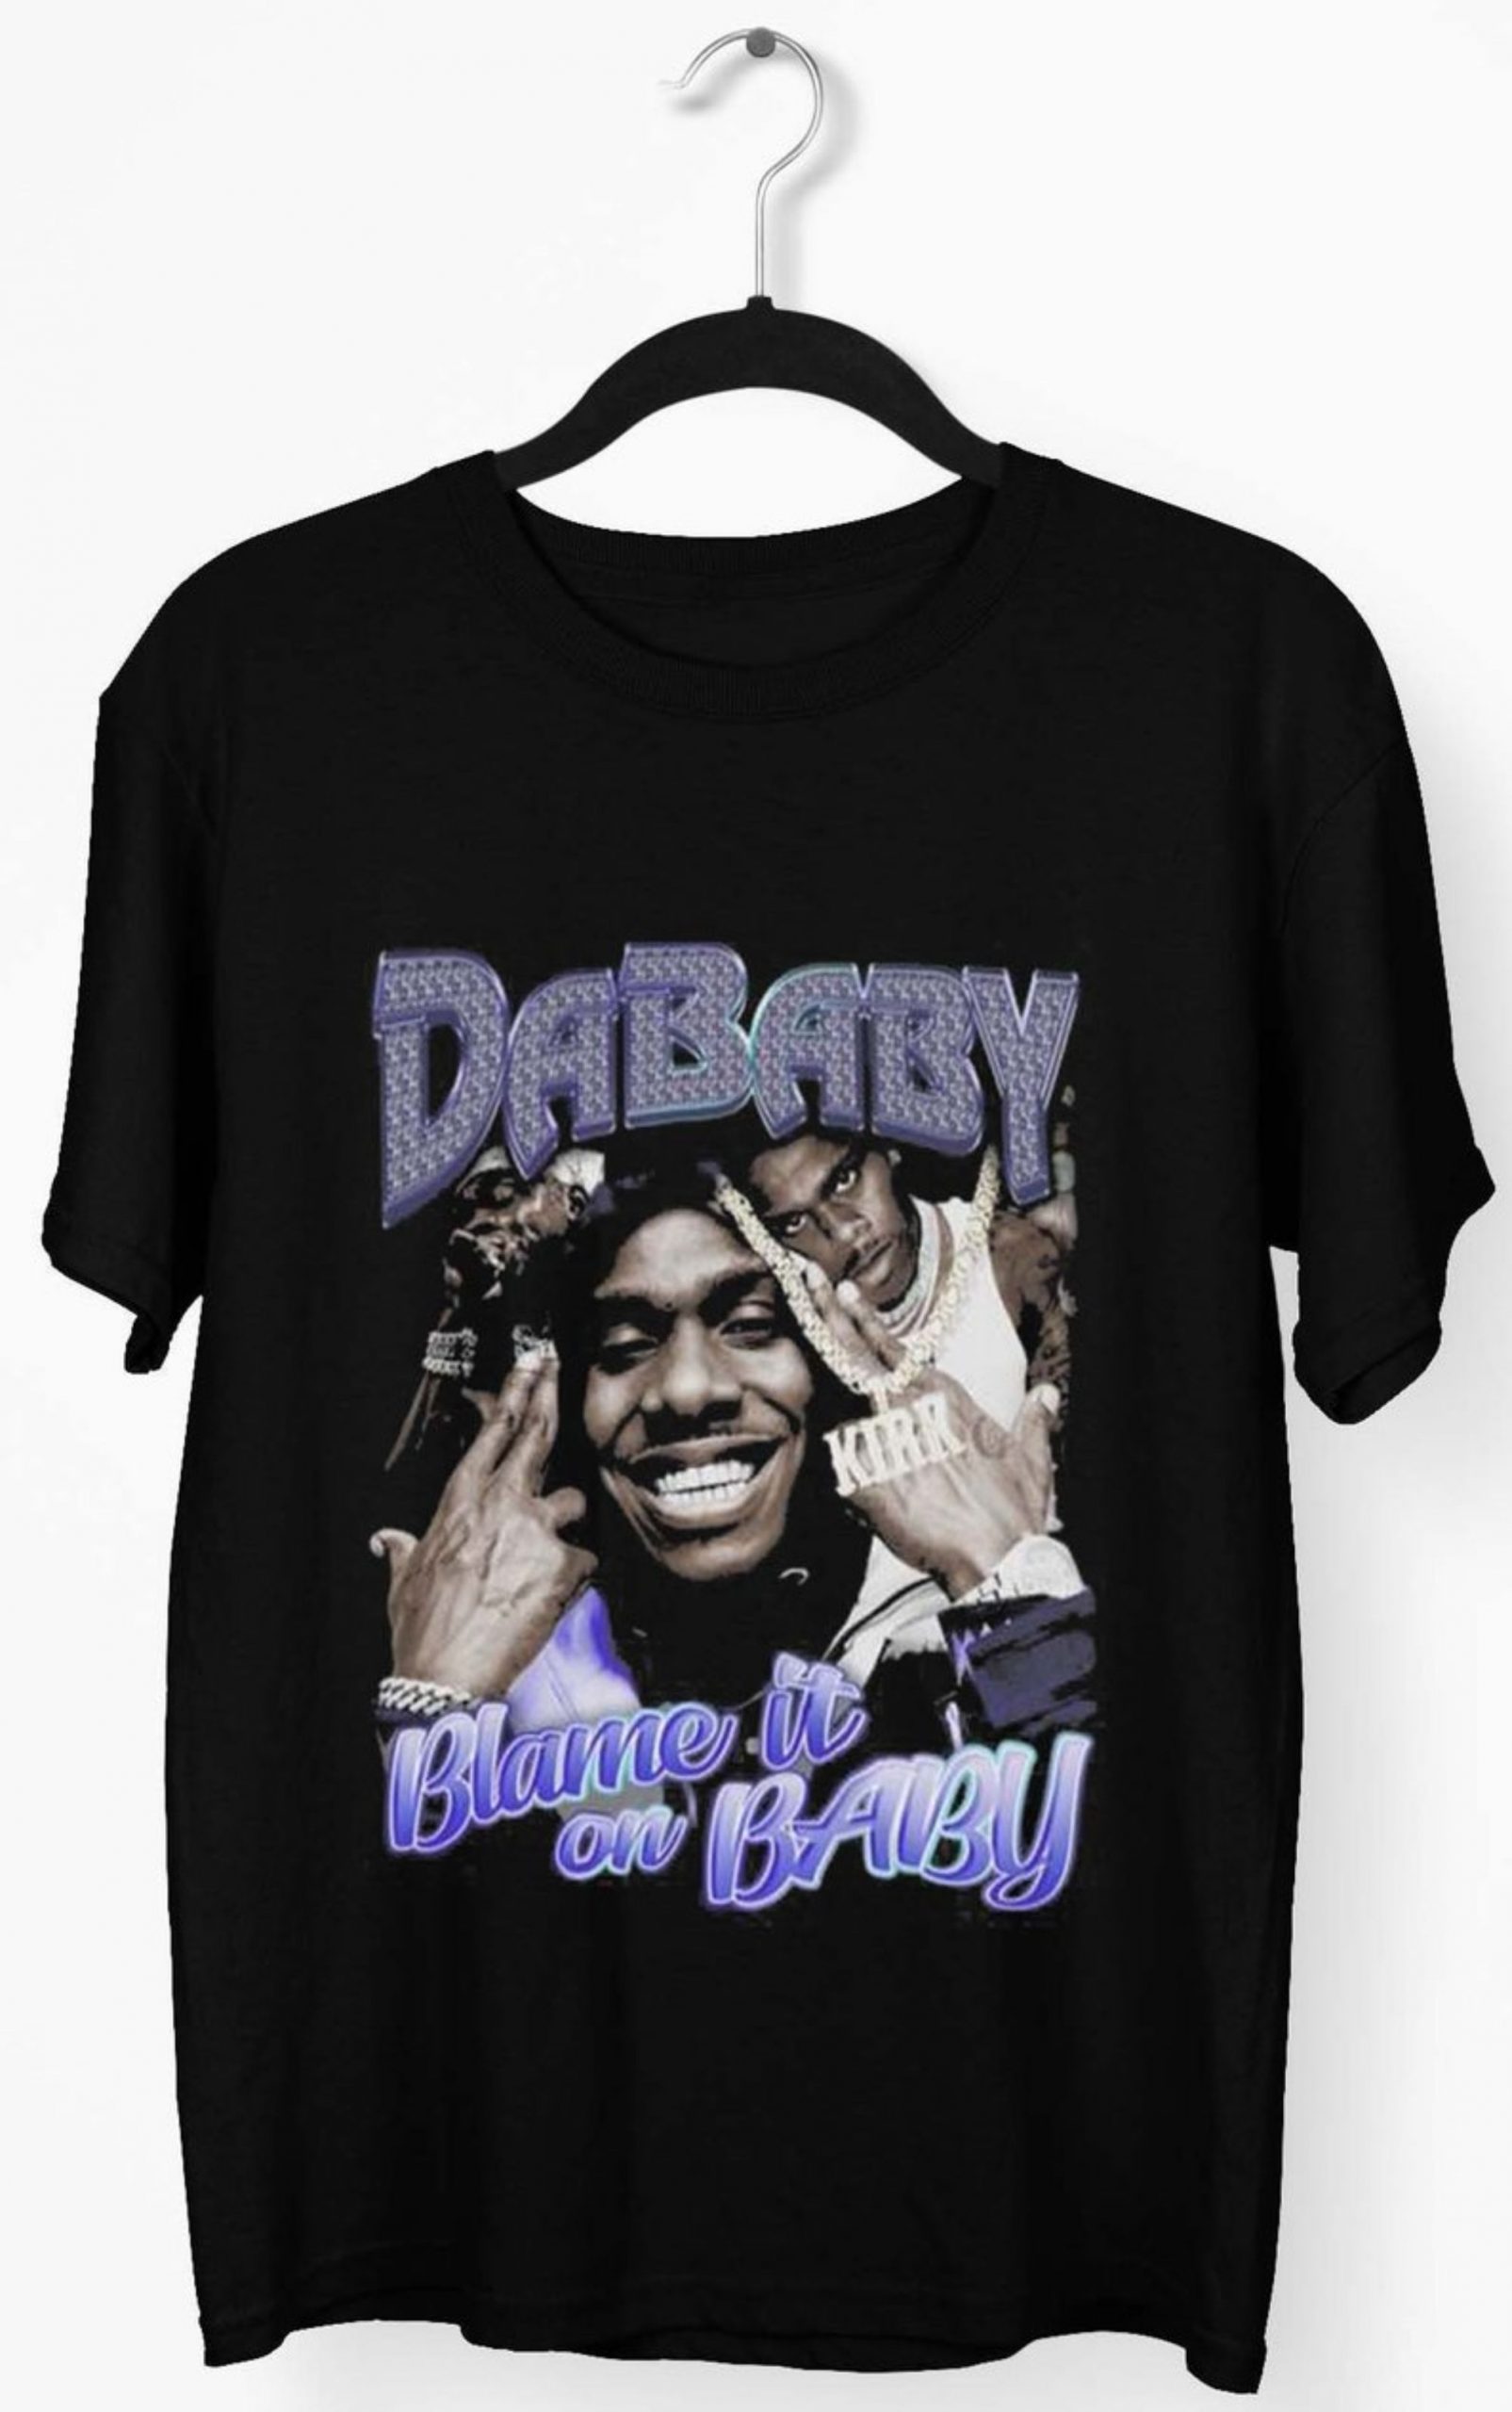 Dababy Tshirt 